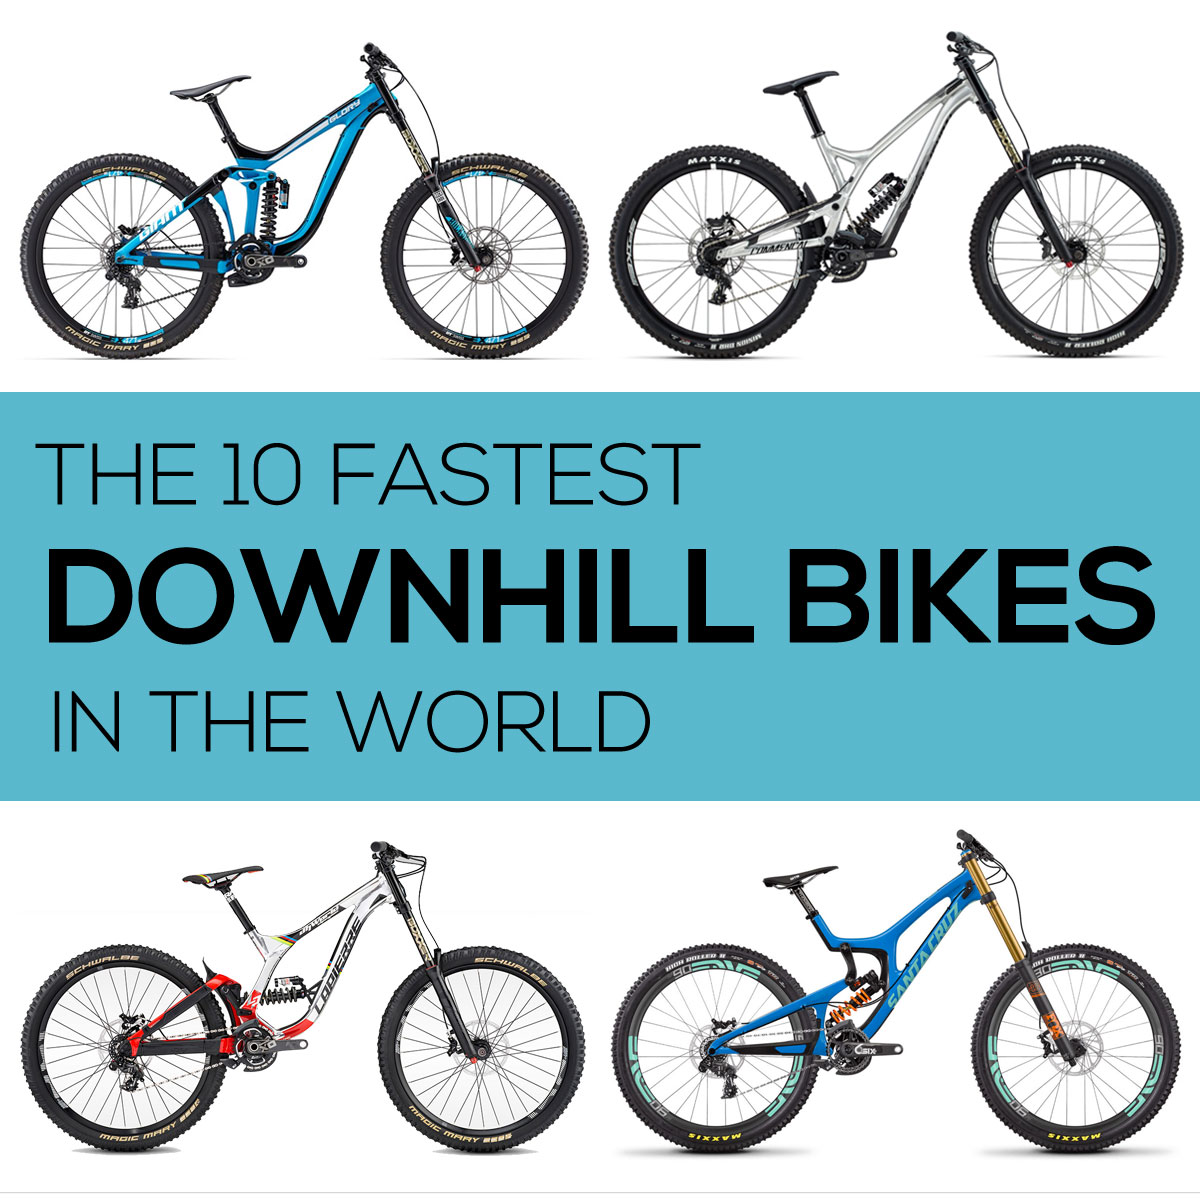 Las 10 bicicletas de descenso más rápidas del mundo, según los resultados de la carrera, Doltcini